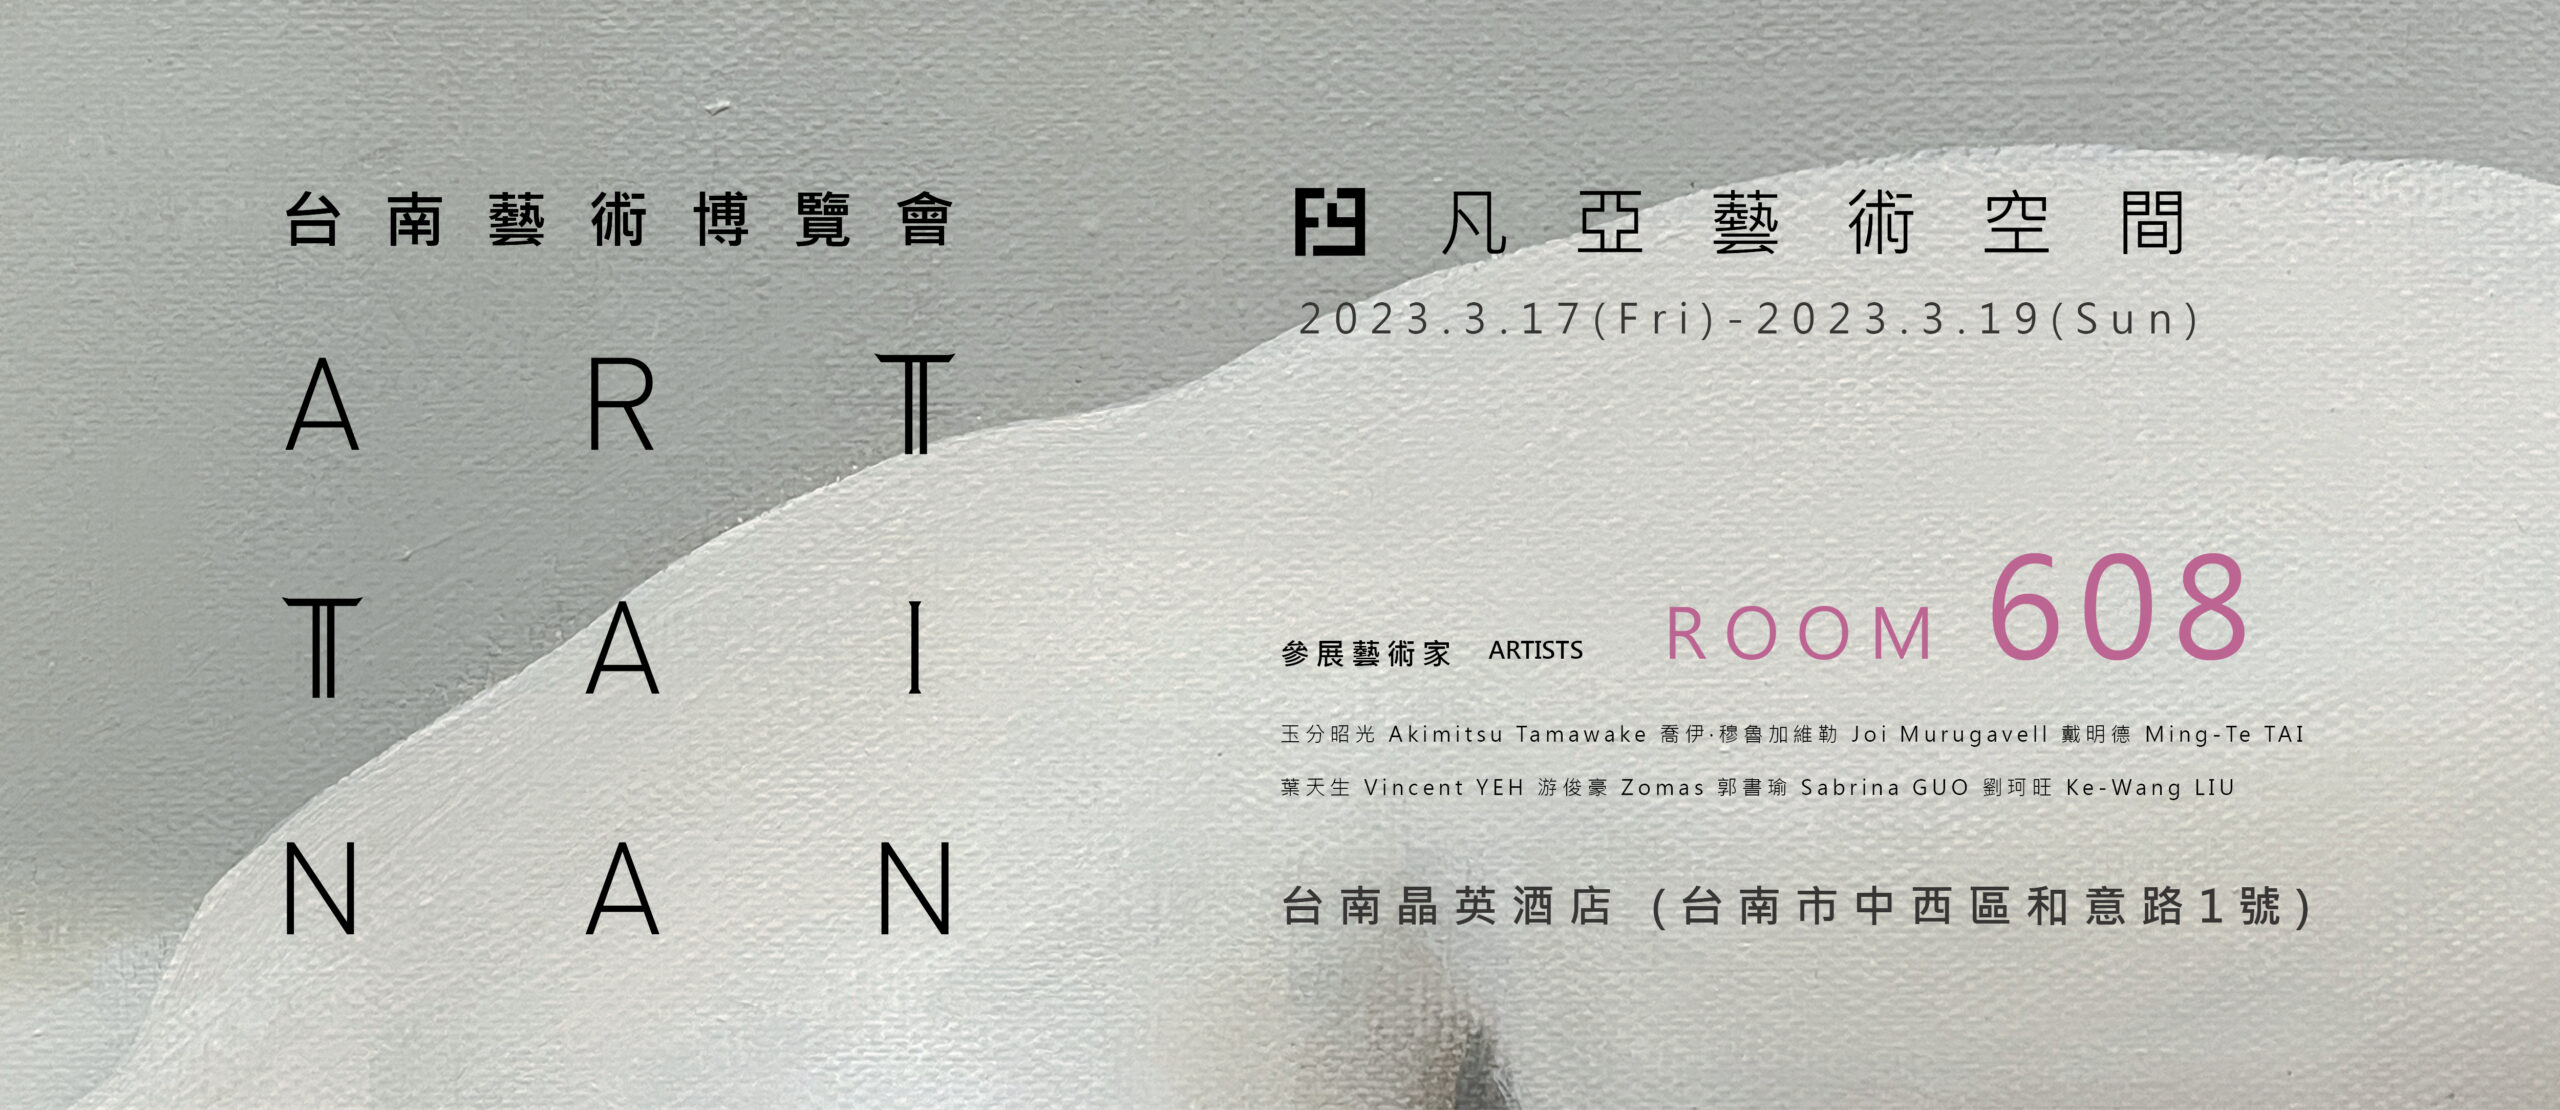 2023 ART TAINAN 台南藝術博覽會 / 展間608